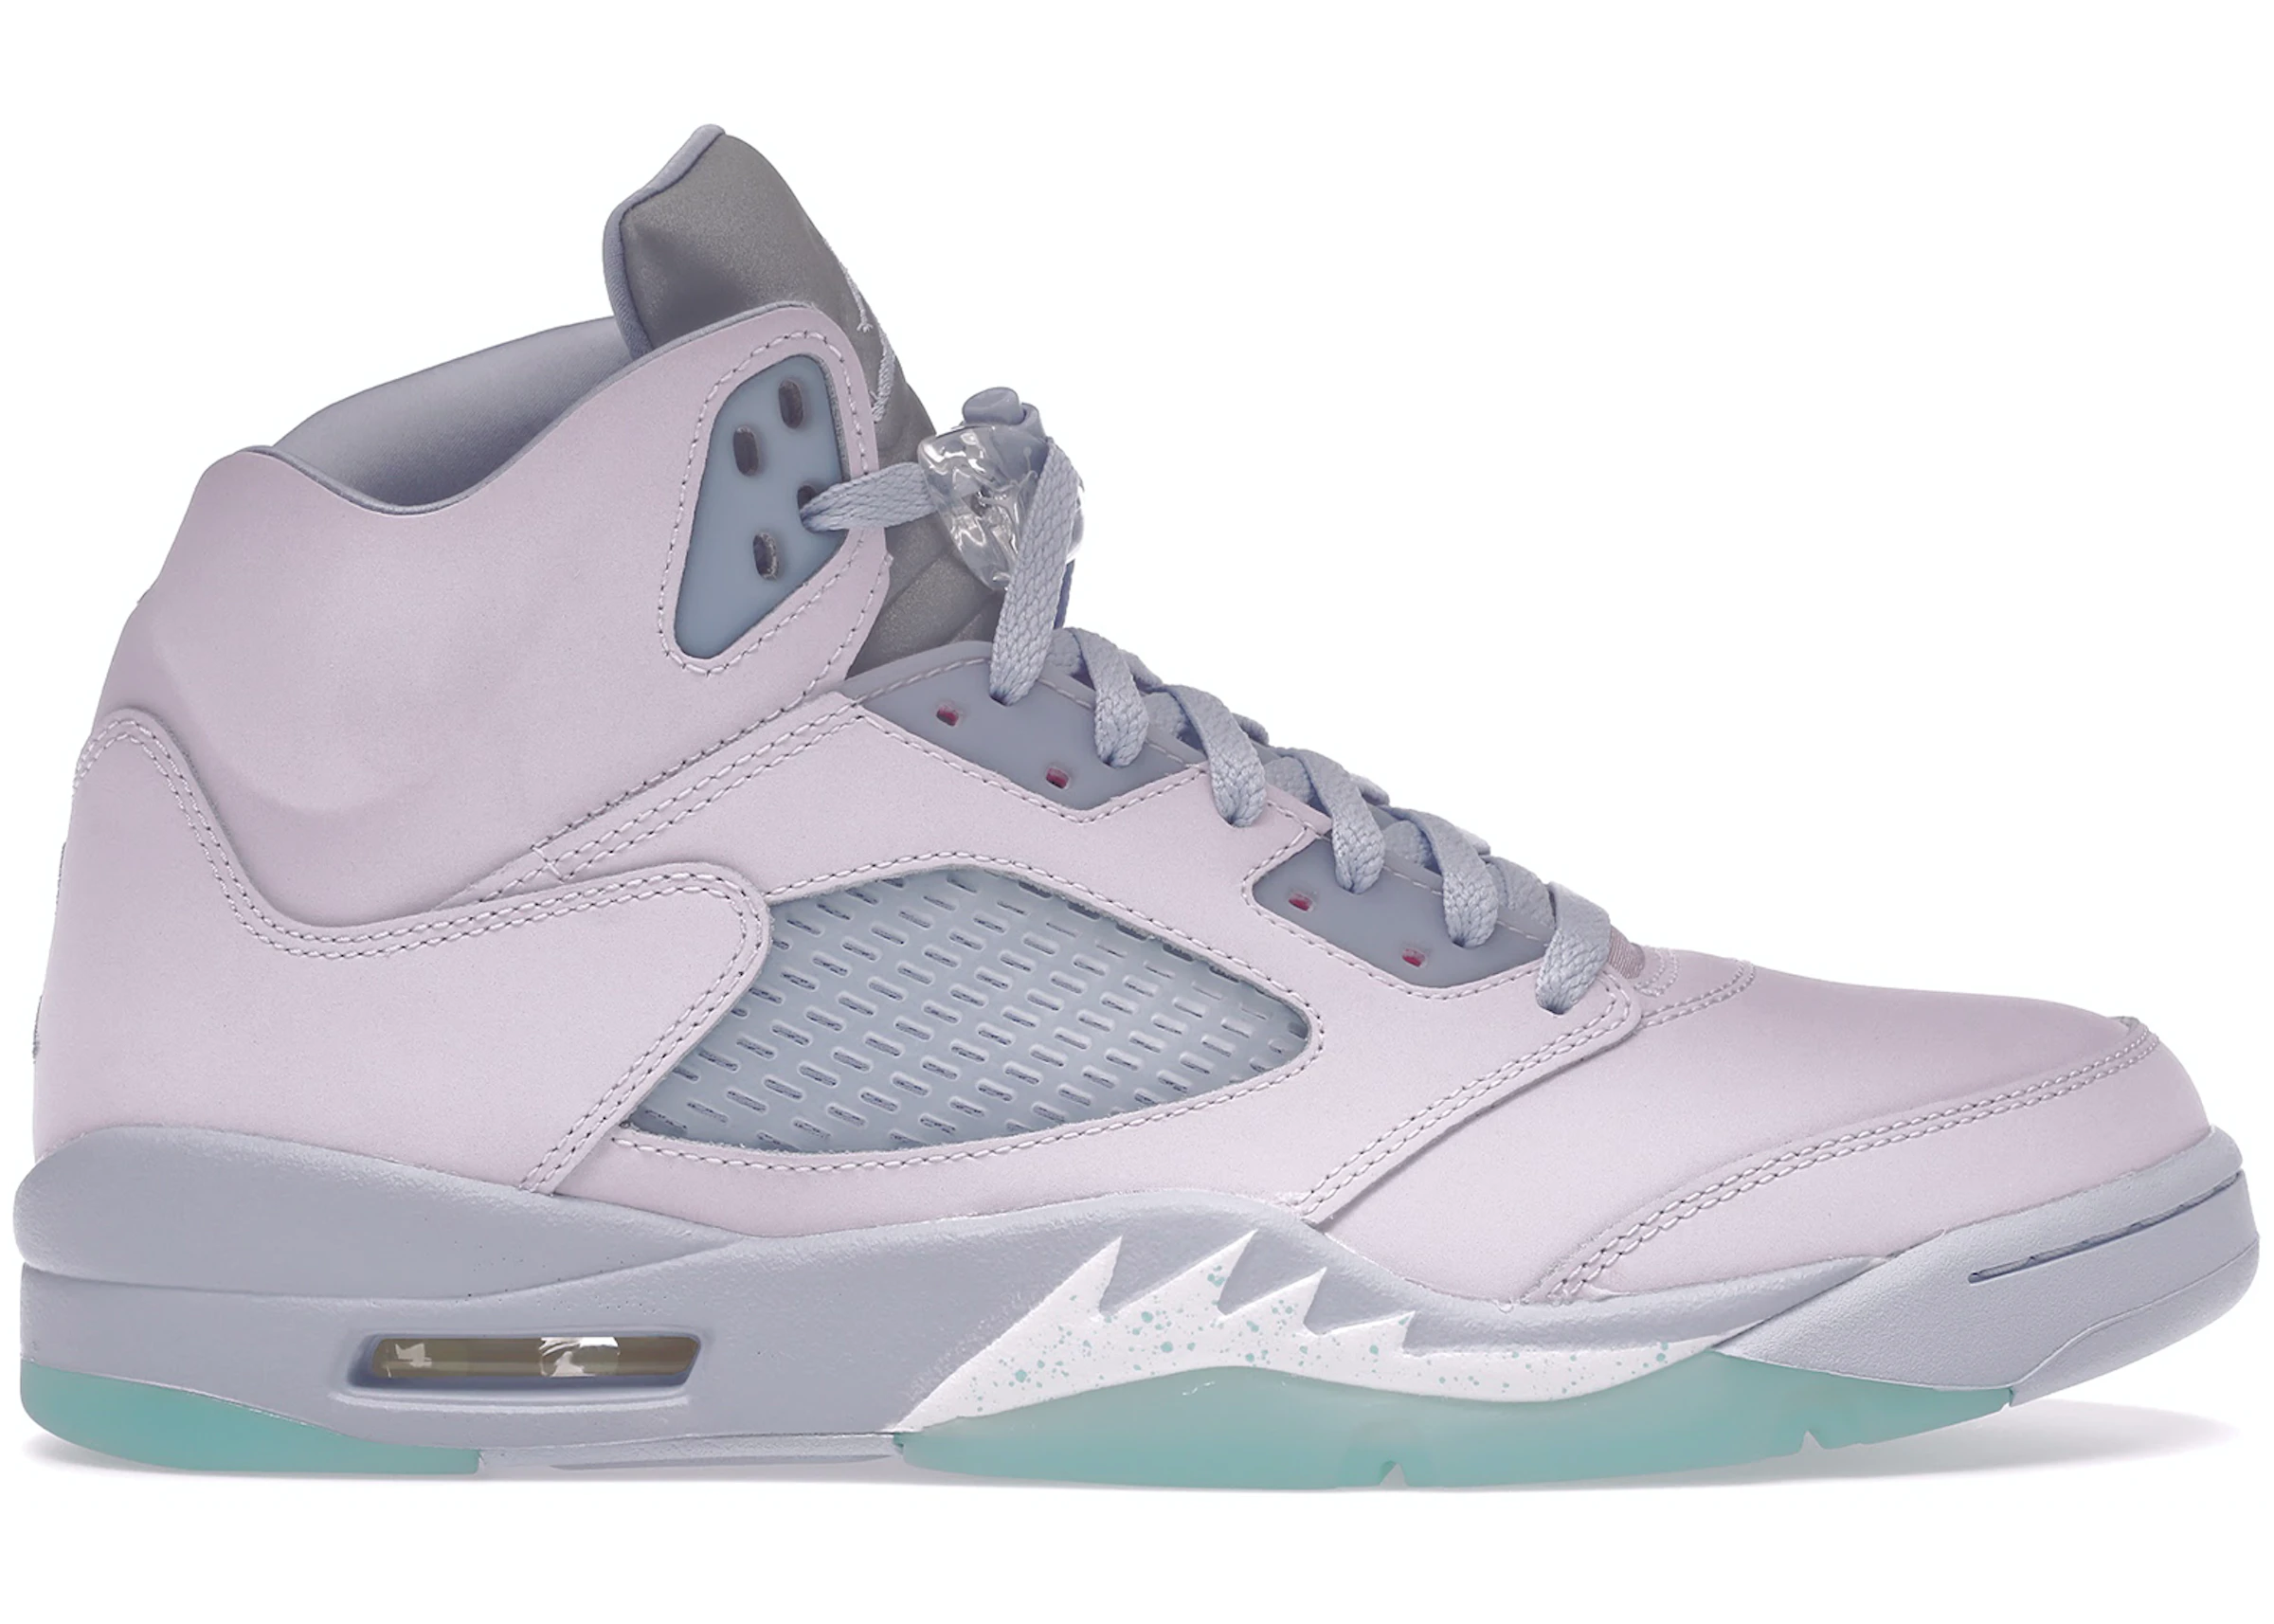 men's nike air jordan v shoes | Air Jordan 5 Sneakers - StockX